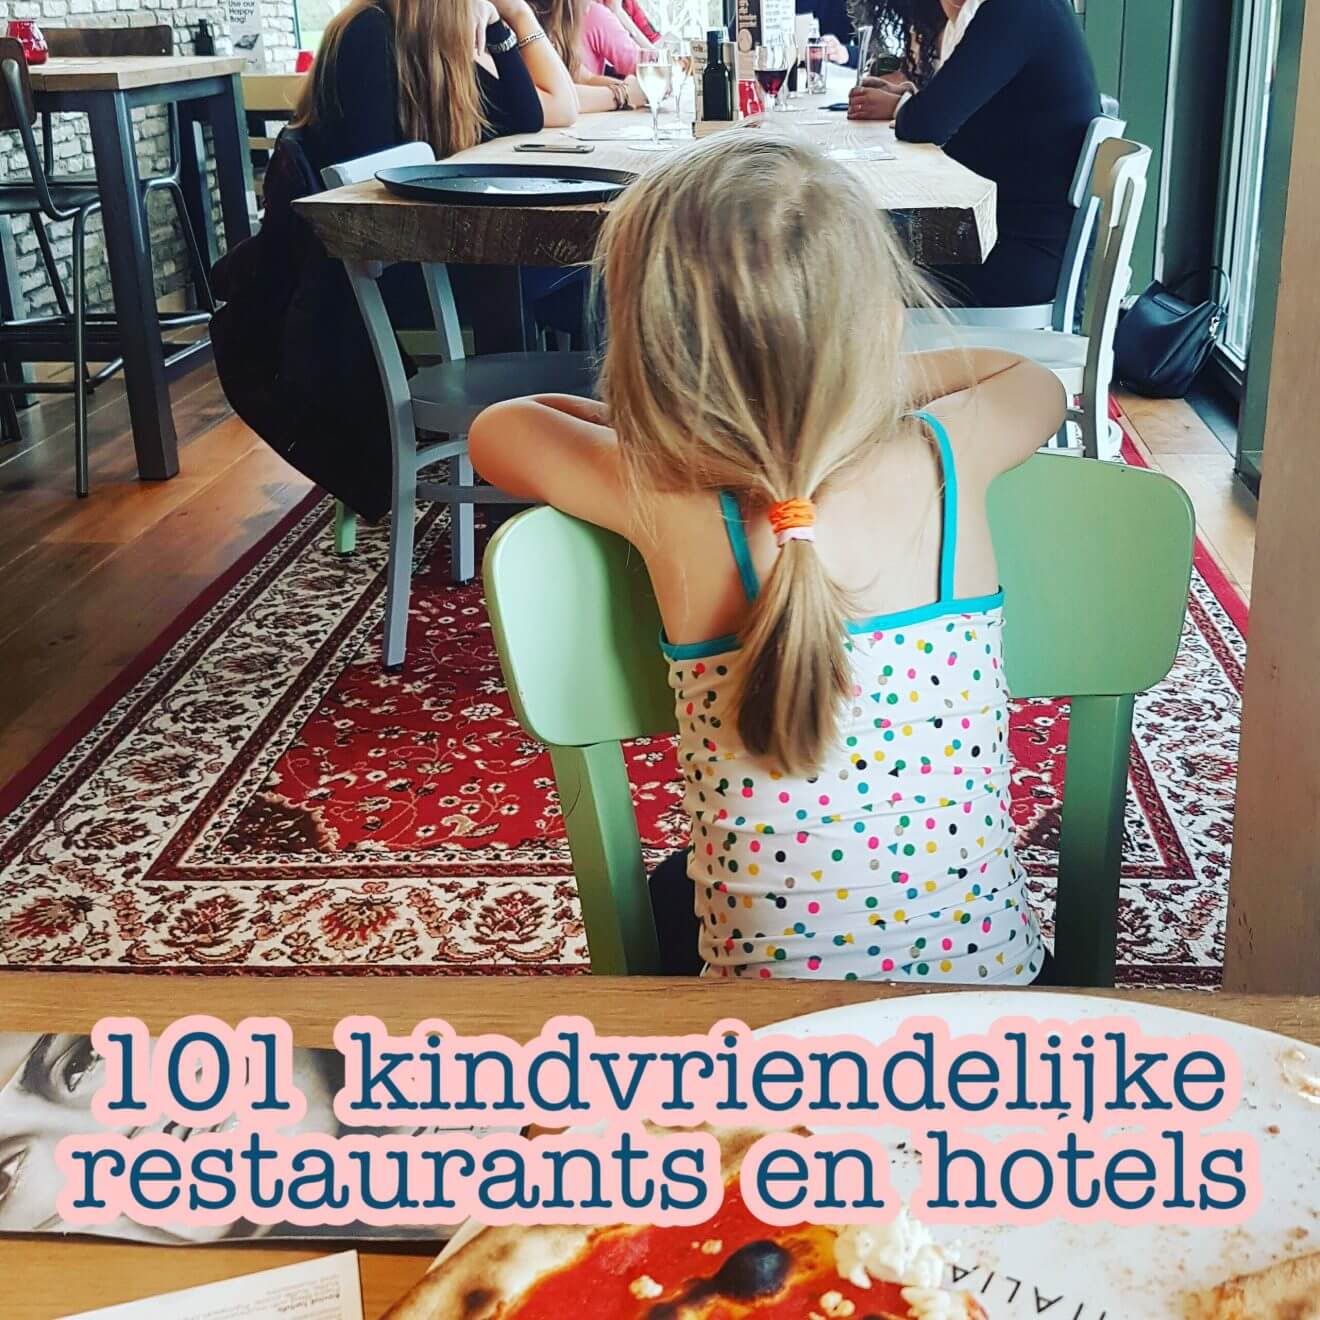 Kindvriendelijke restaurants en hotels: uit eten en slapen met kinderen